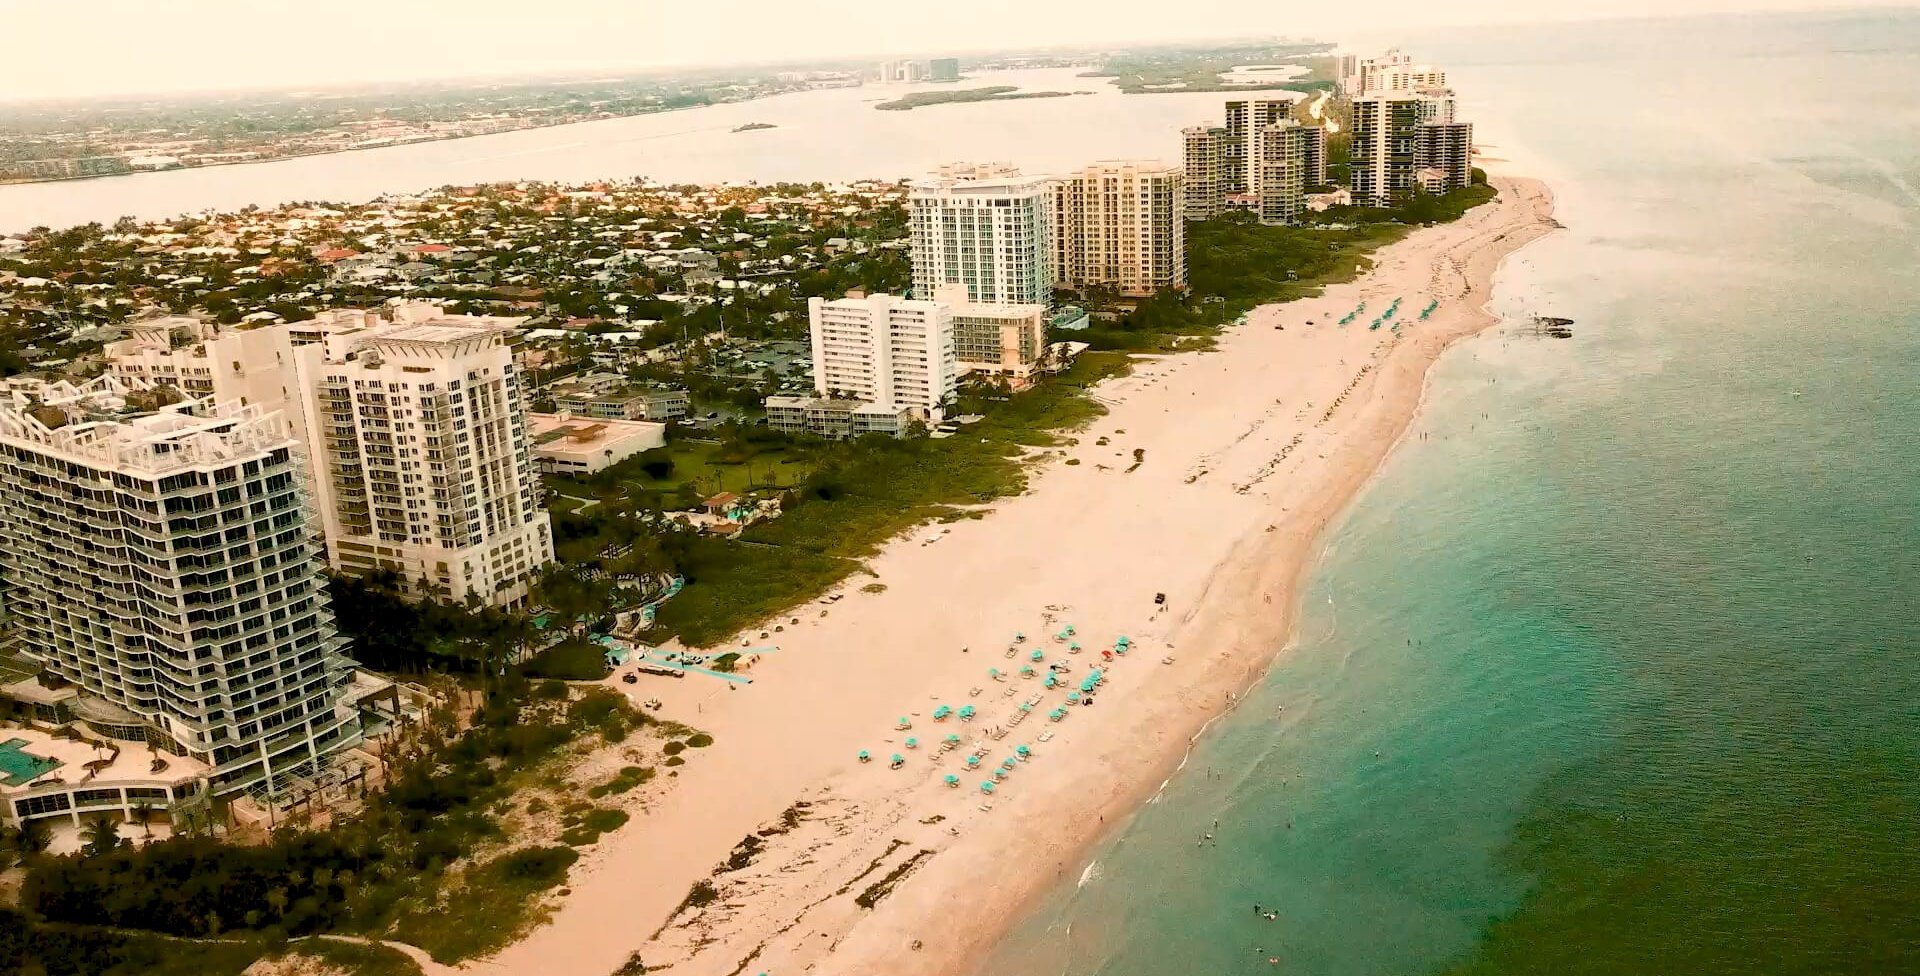 Aerial shot of The Singer Oceanfront Resort